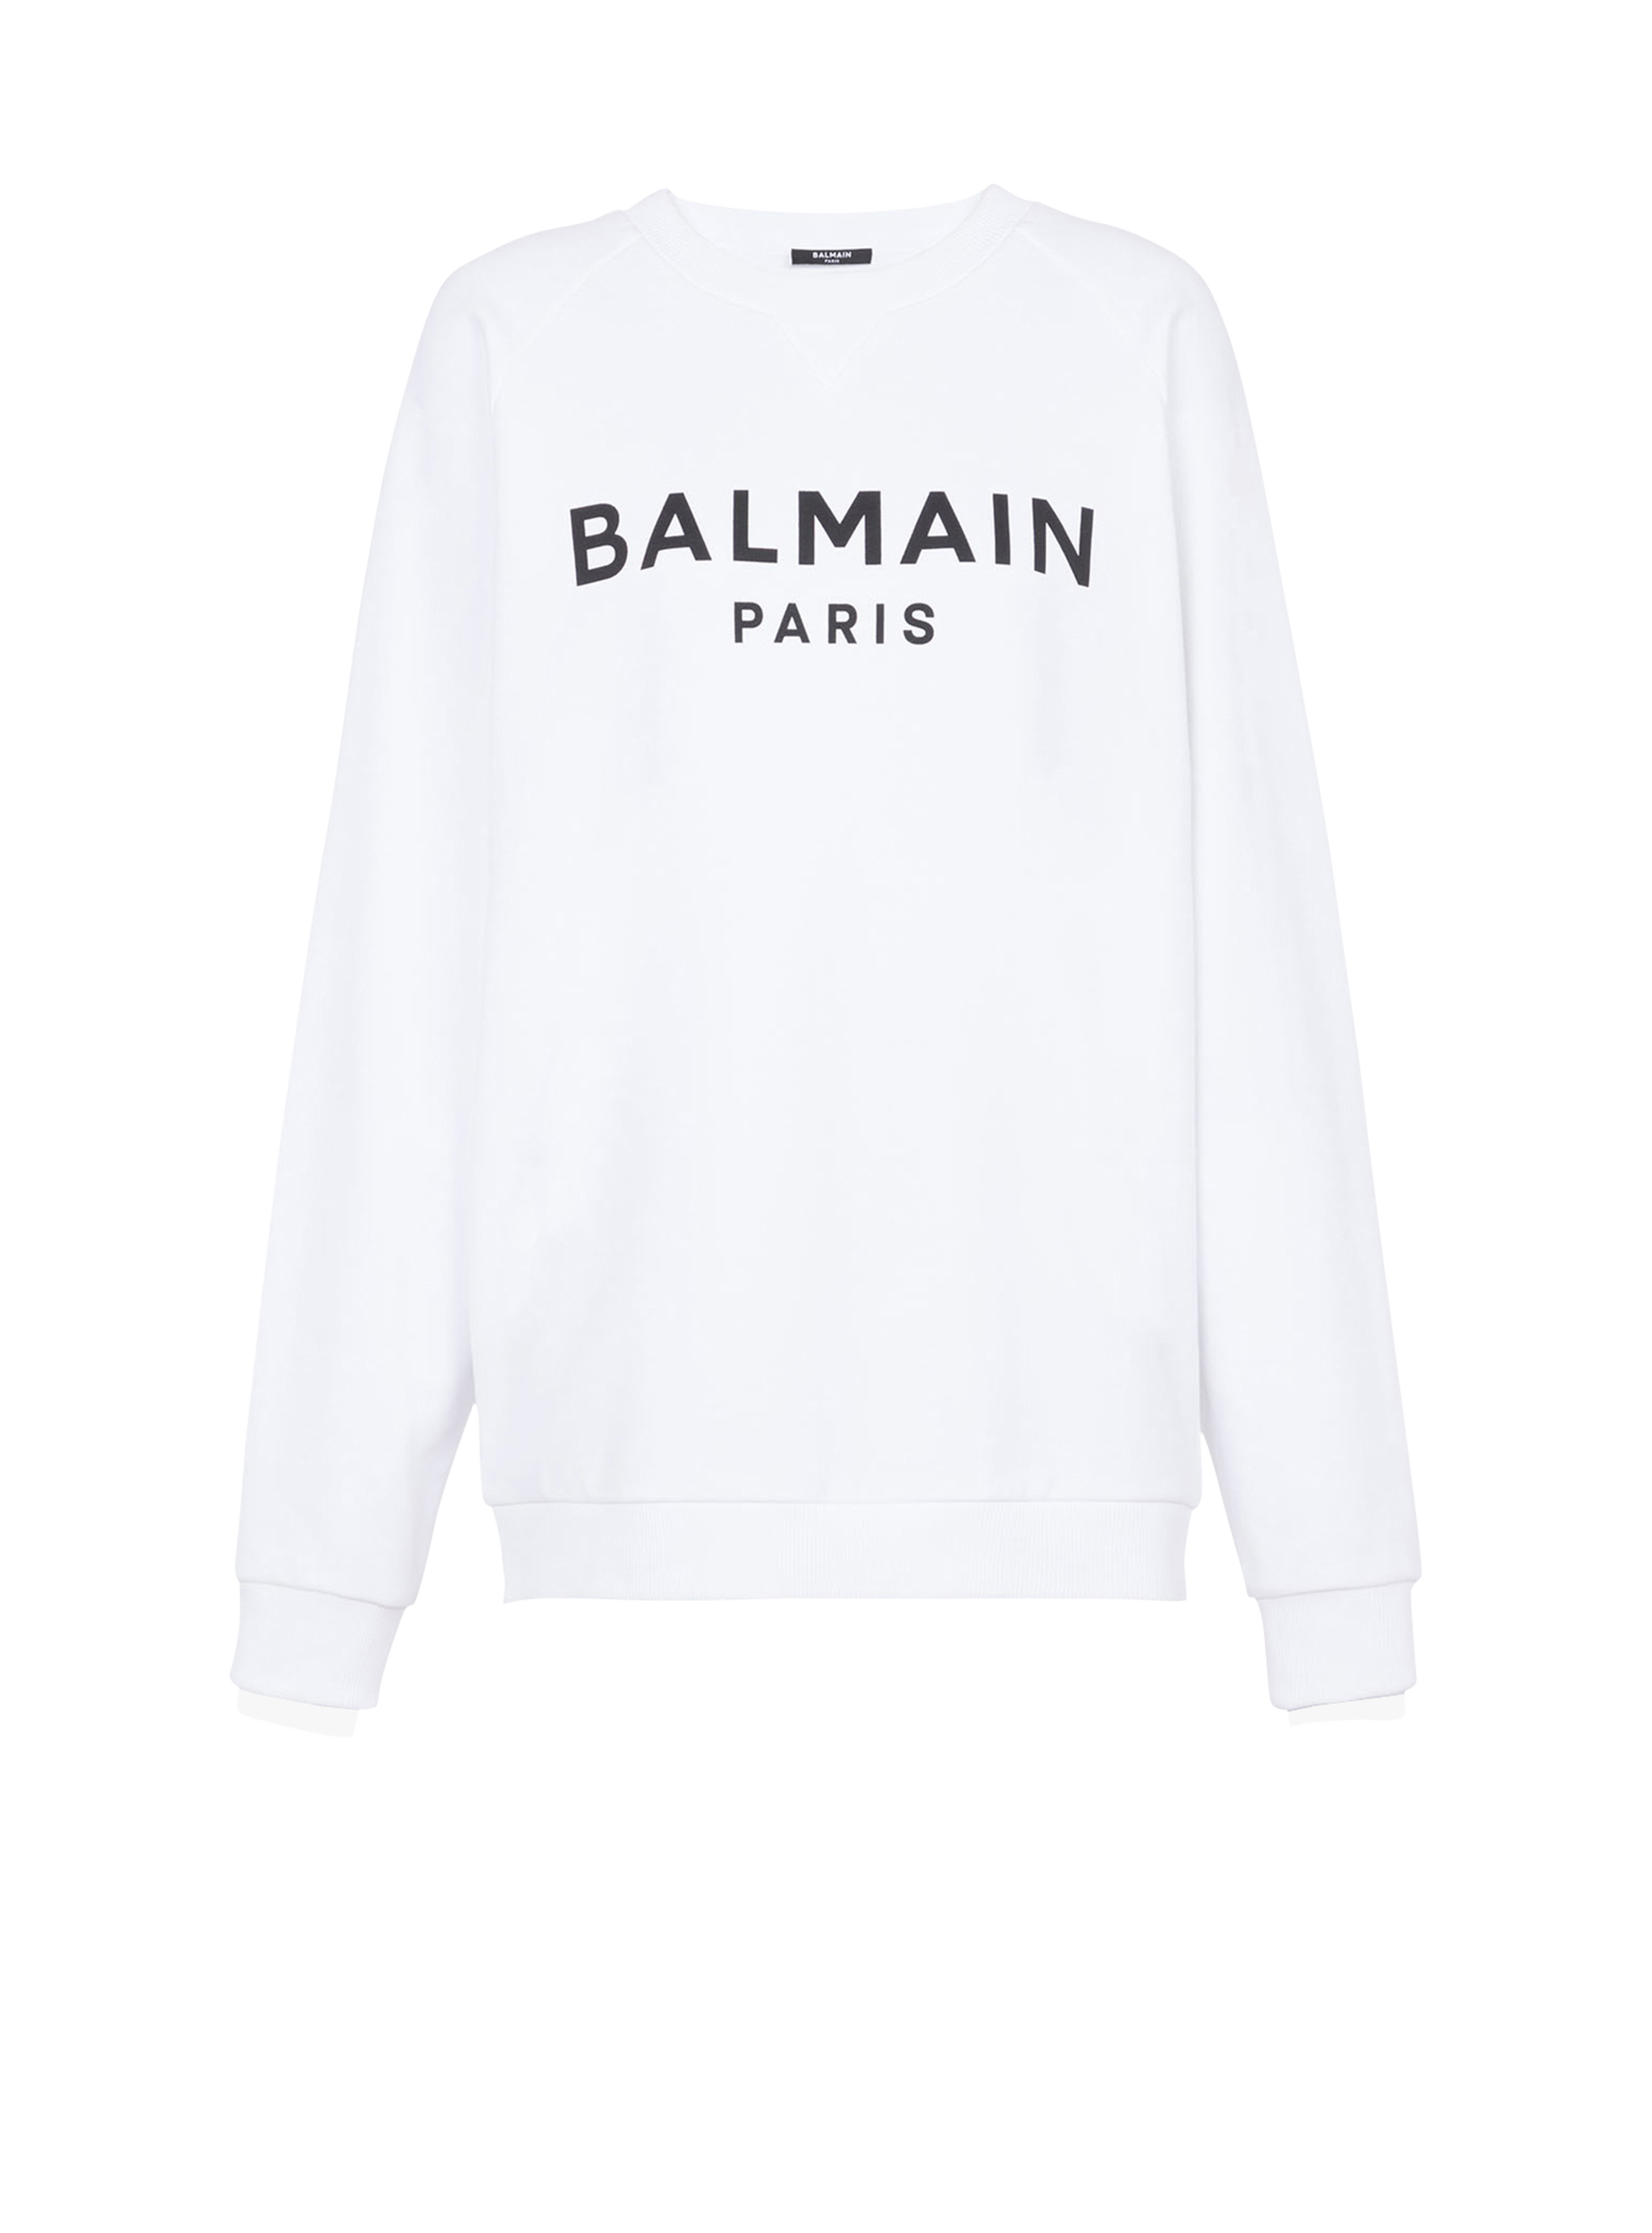 Eco-designed cotton sweatshirt with Balmain Paris metallic logo print, white